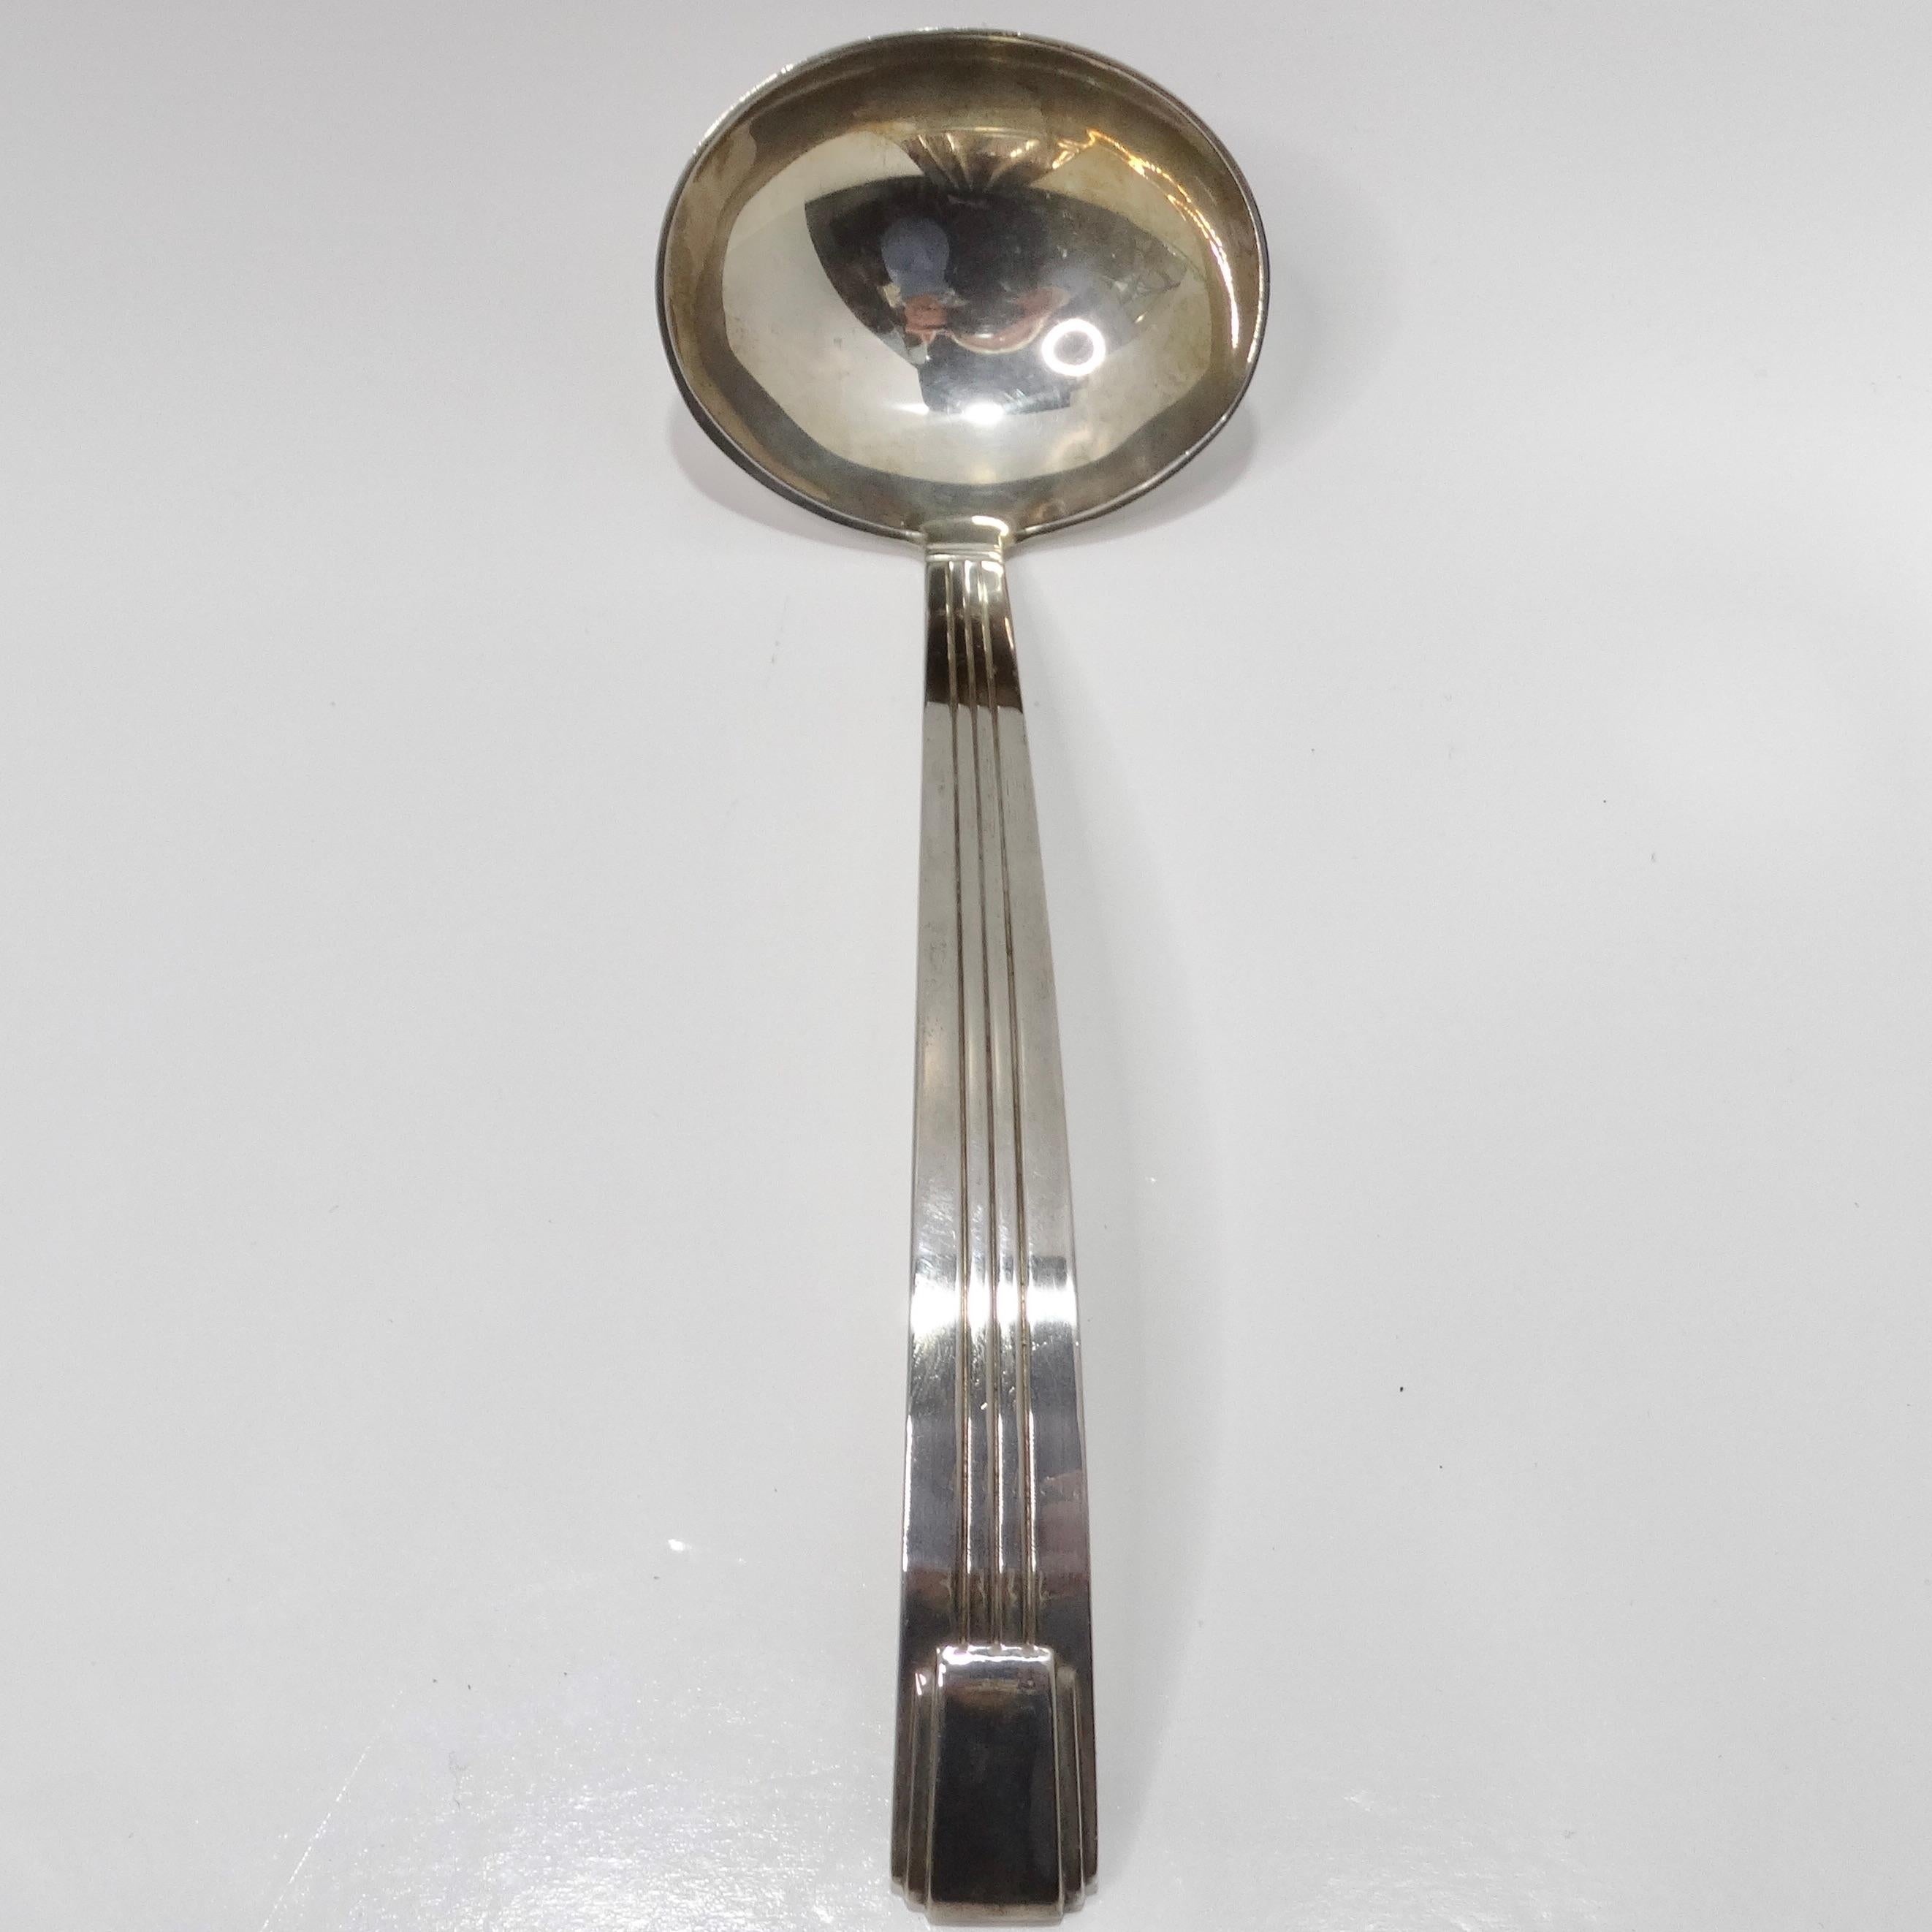 Der große Servierlöffel aus Silber von Tiffany & Co aus den 1950er-Jahren ist ein prächtiges Stück Vintage-Silber, das durch seine Eleganz und Funktionalität besticht.

Dieser riesige Suppenlöffel aus reinem Silber trägt auf der Rückseite die